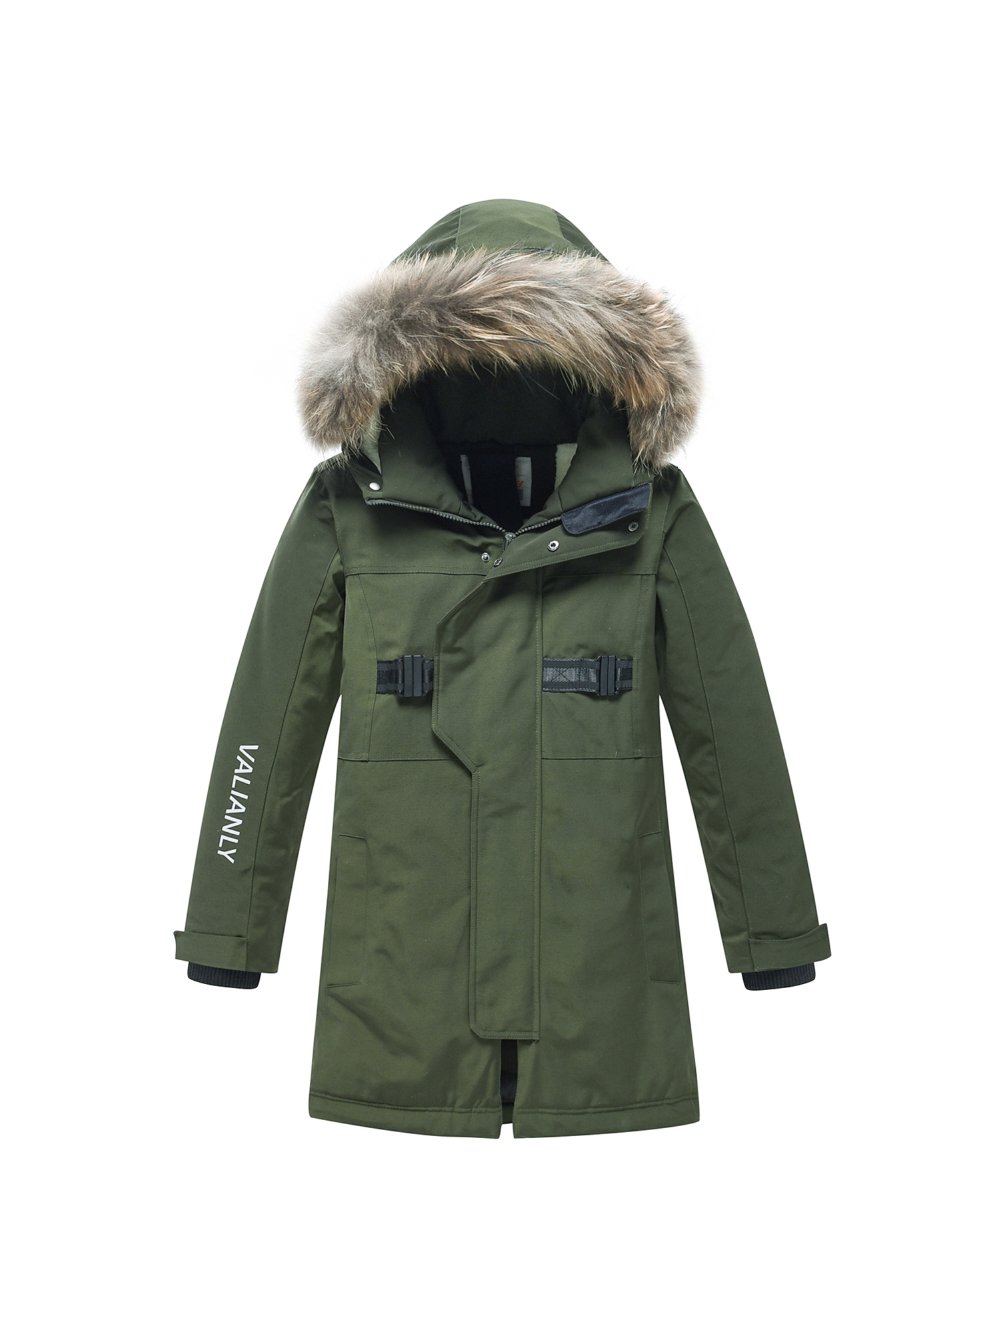 Купить куртку парку для мальчика оптом от производителя недорого в Москве 9341Kh 1